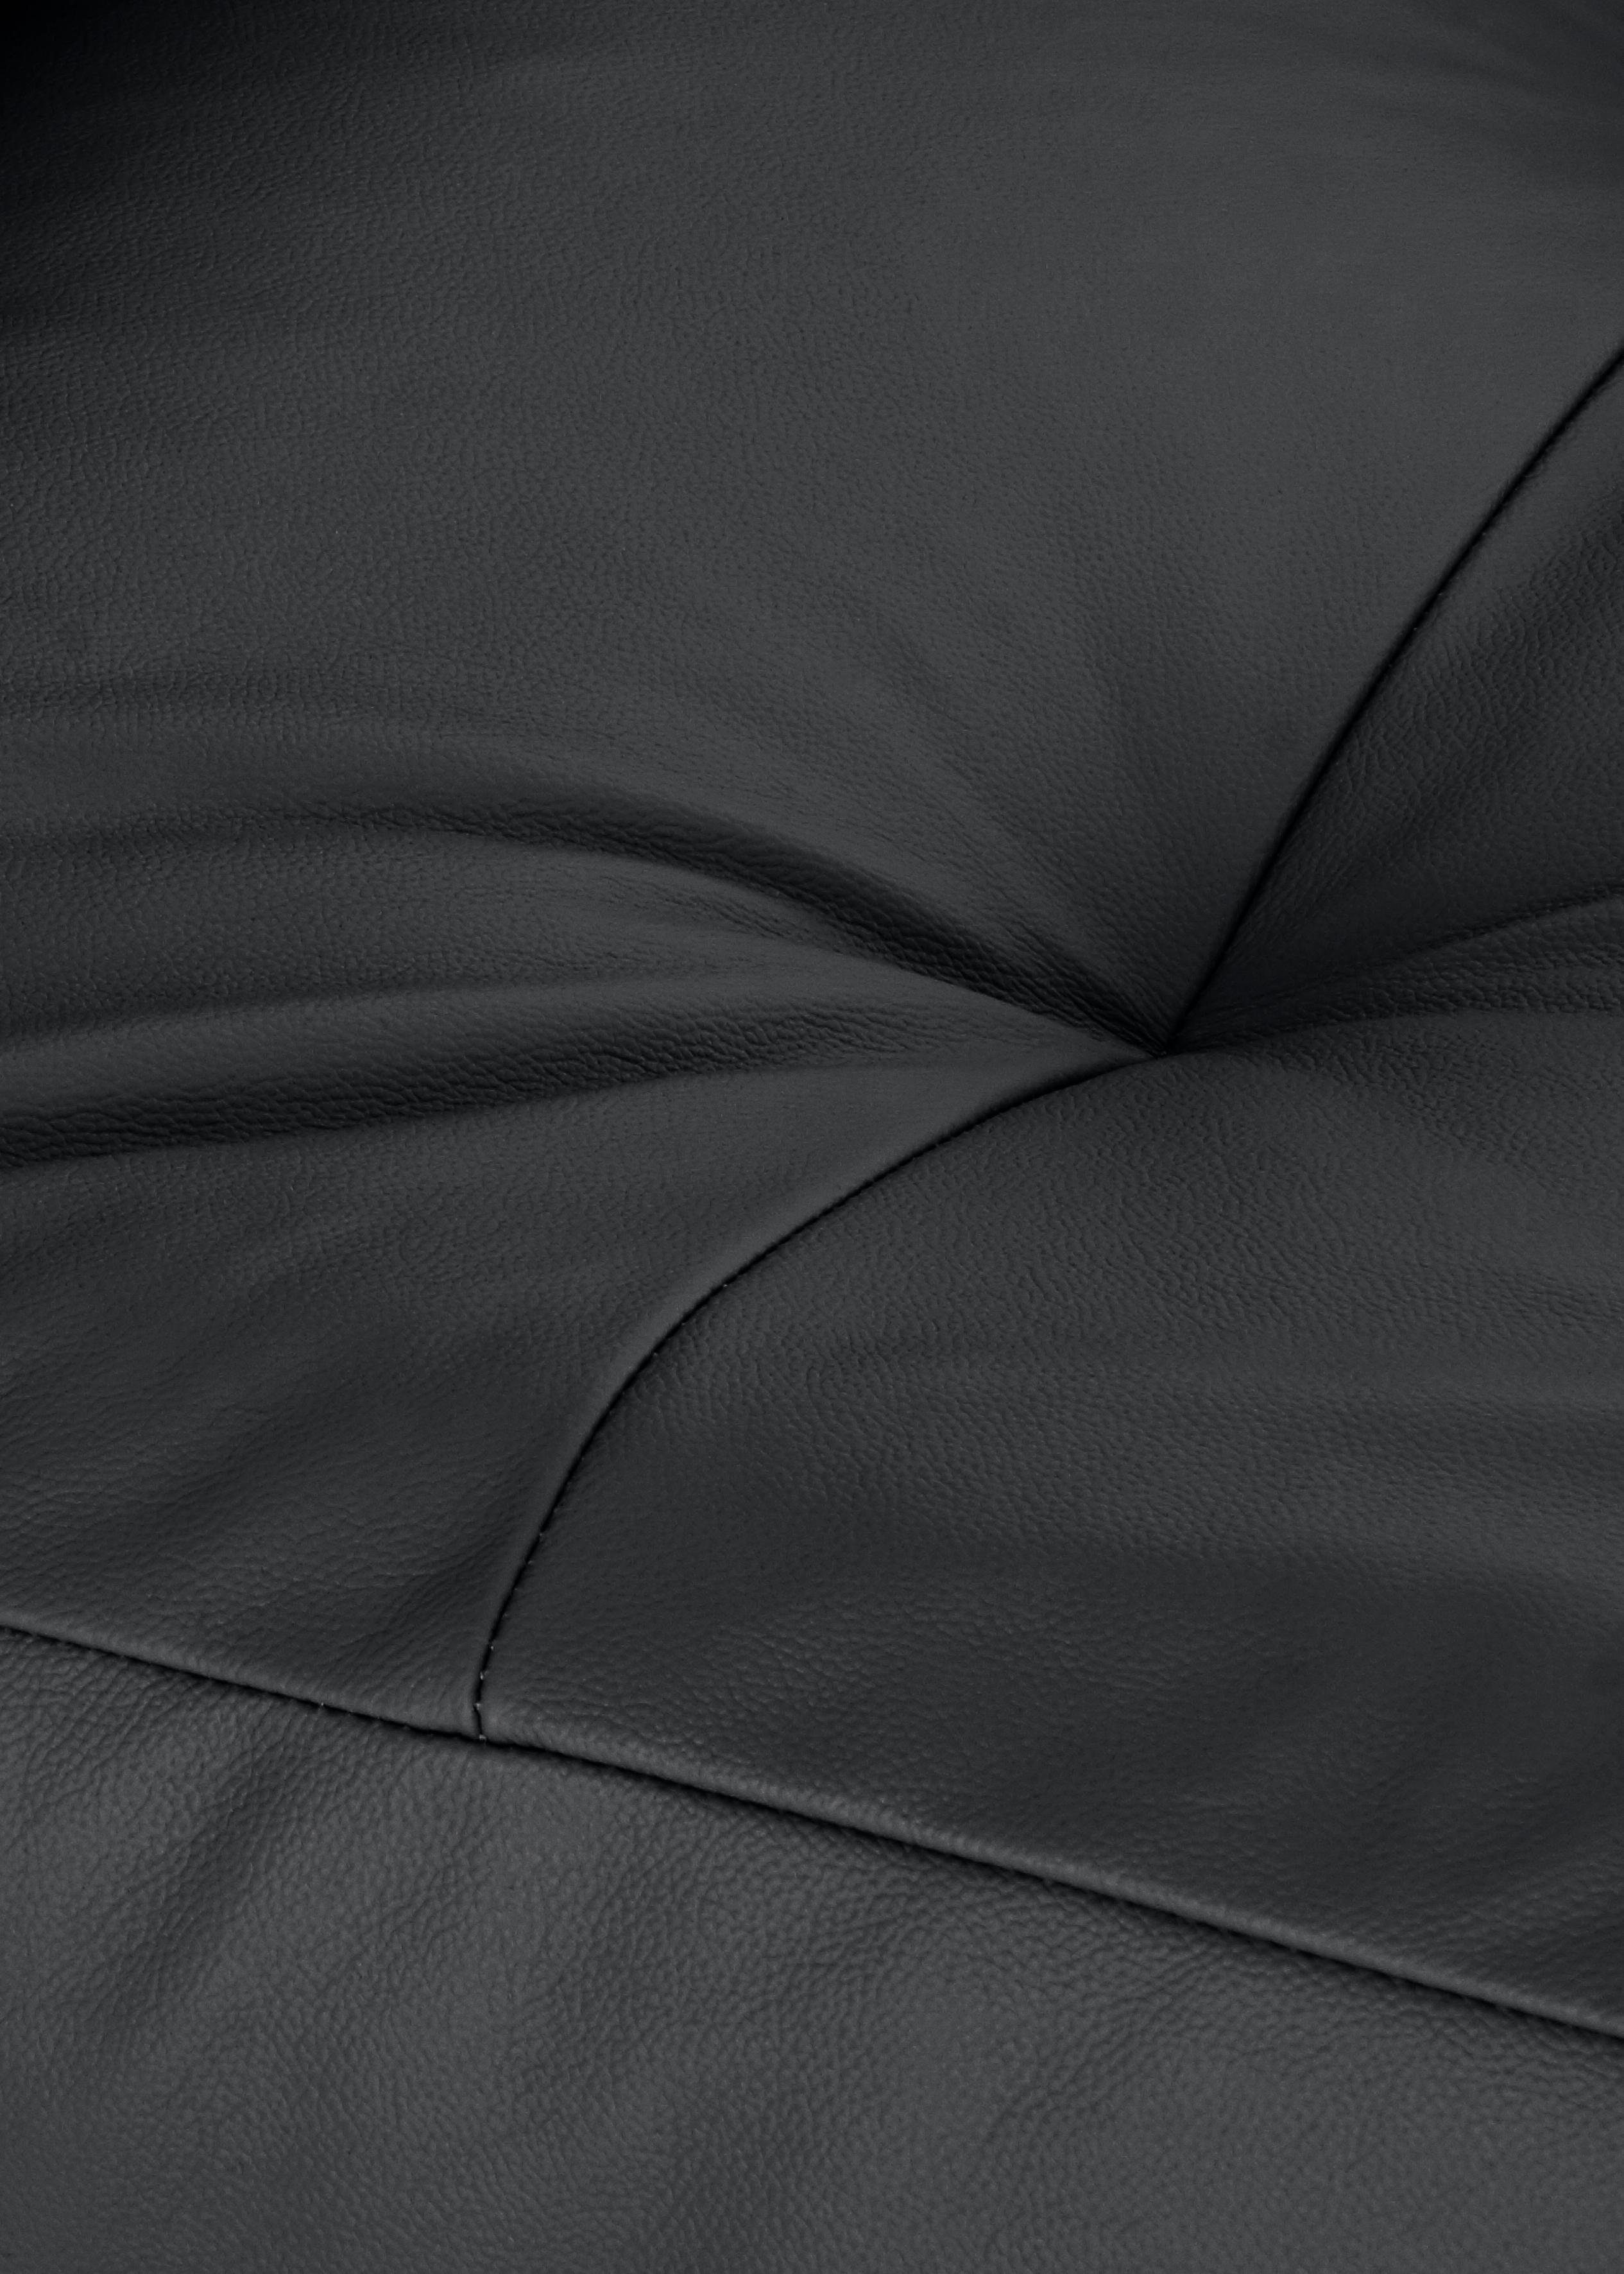 W.SCHILLIG Chaiselongue softy, pulverbeschichtet Heftung Sitz, schwarz Füße mit dekorativer im